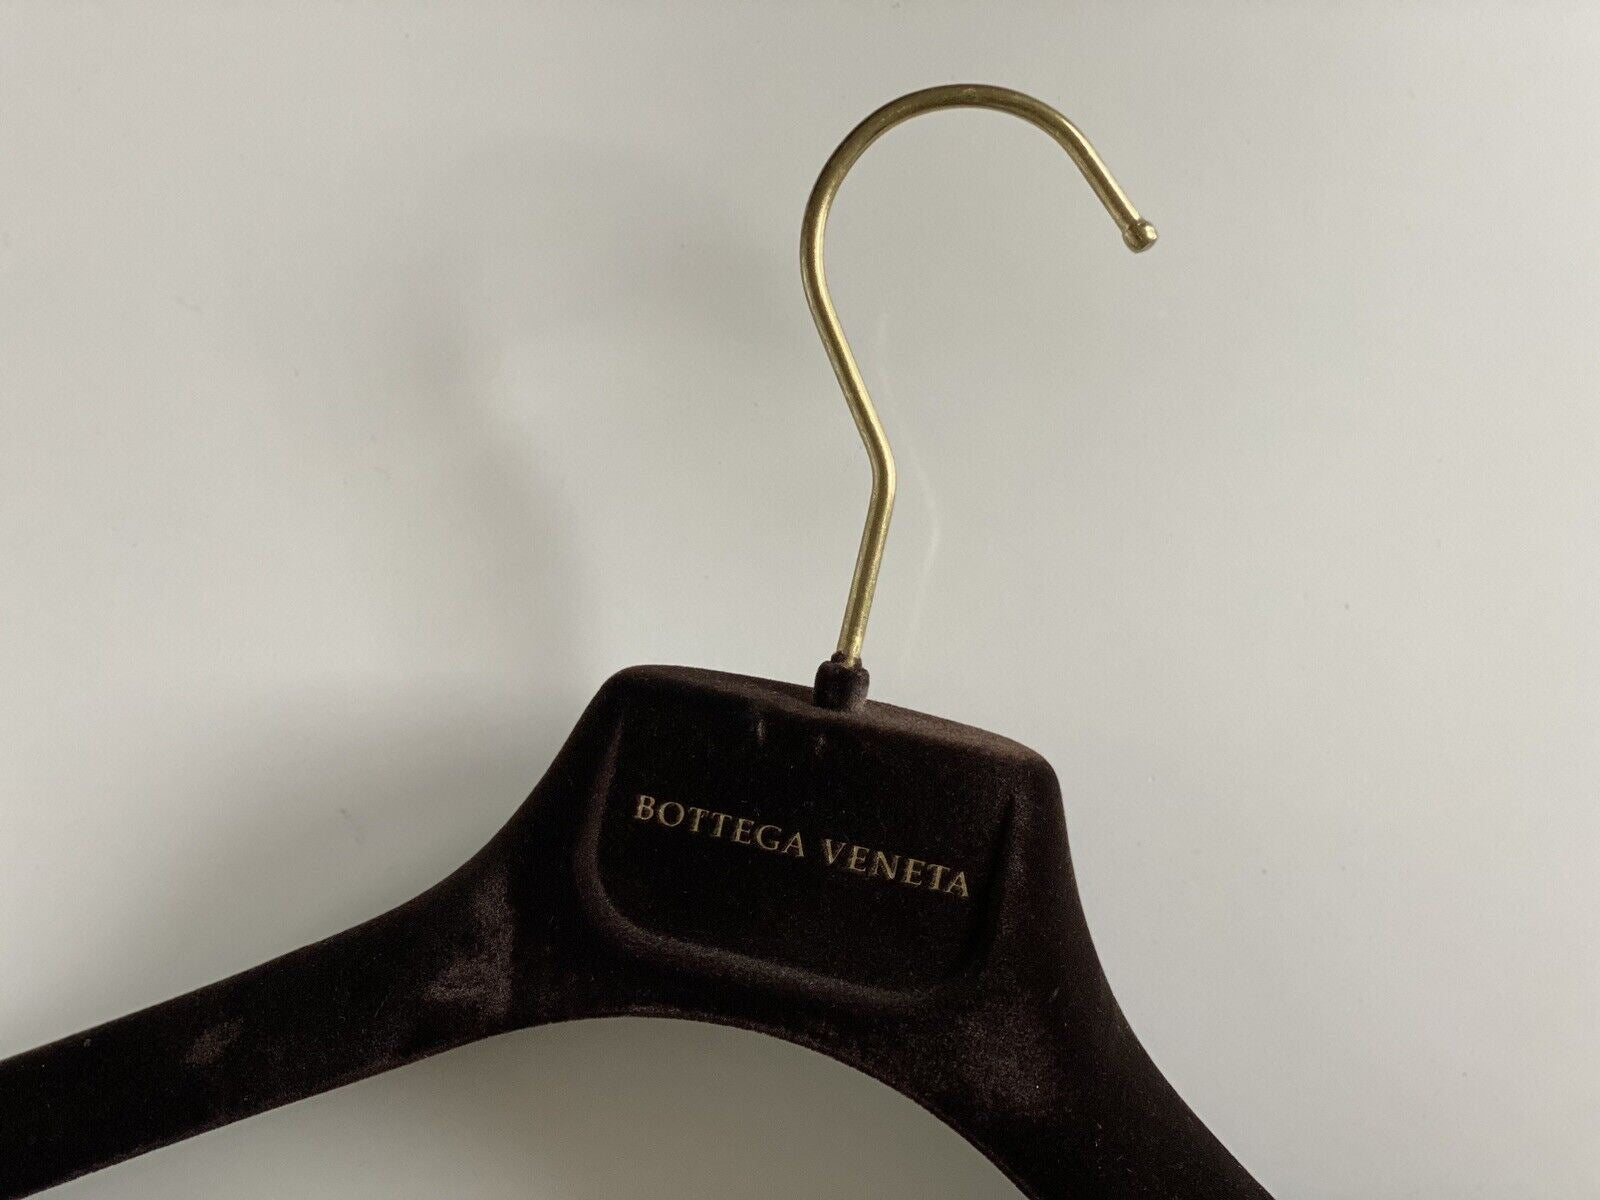 Bottega Veneta Samtbrauner Anzug-/Jackenbügel mit goldenen Beschlägen, 16,5 x 7,8 cm 